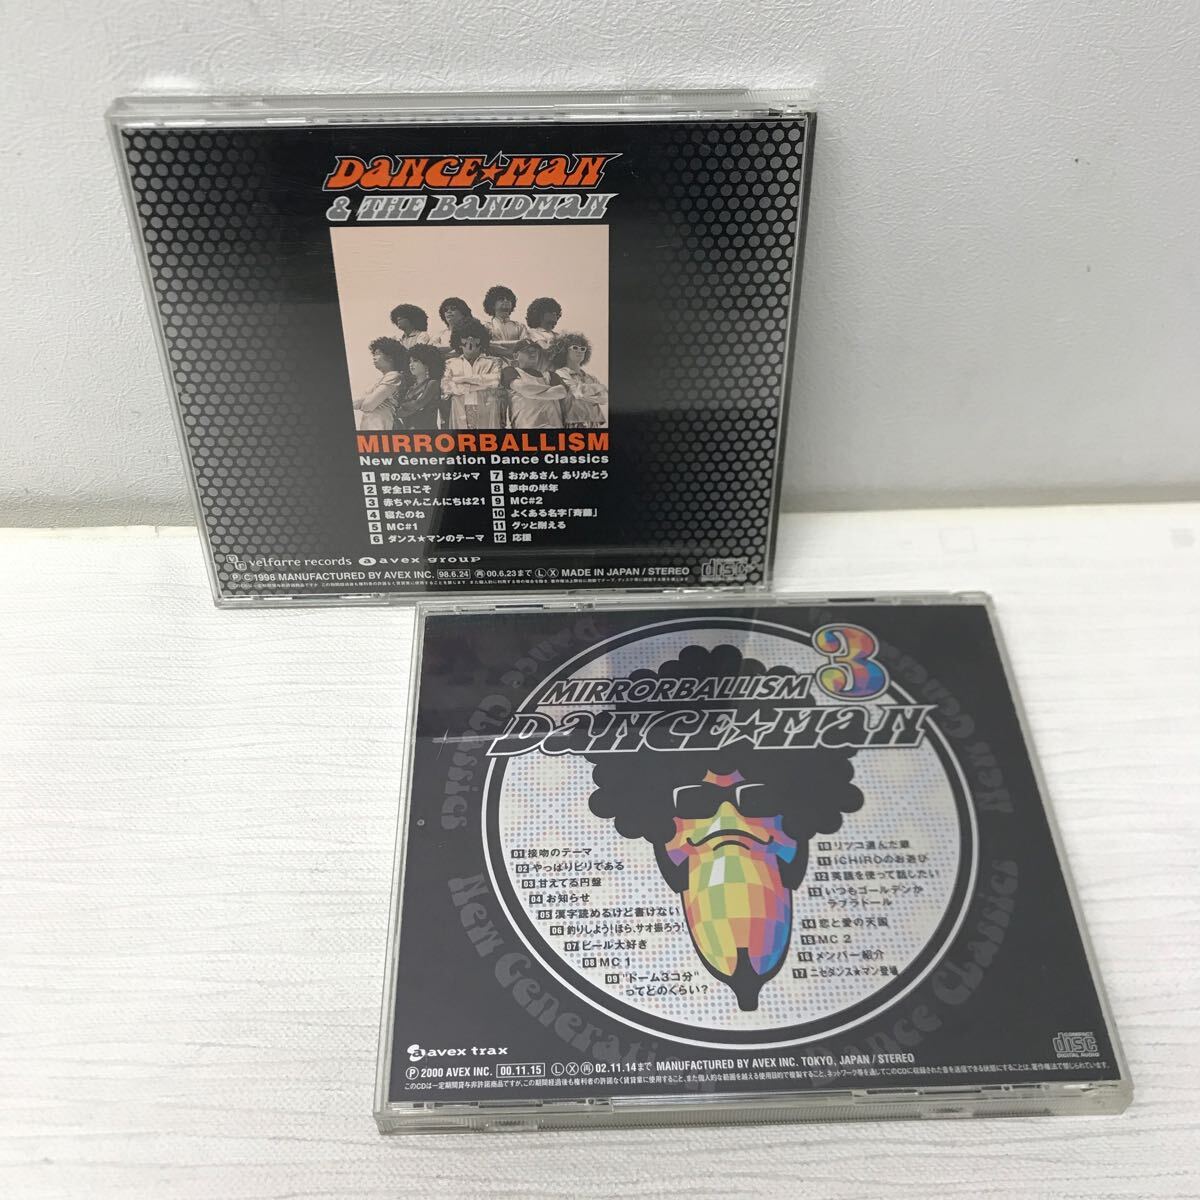 I0422A3 ダンス・マン DANCE MAN ミラーボーリズム 1 3 MIRRORBALLISM CD 2巻セット 音楽 avex ダンスミュージック 